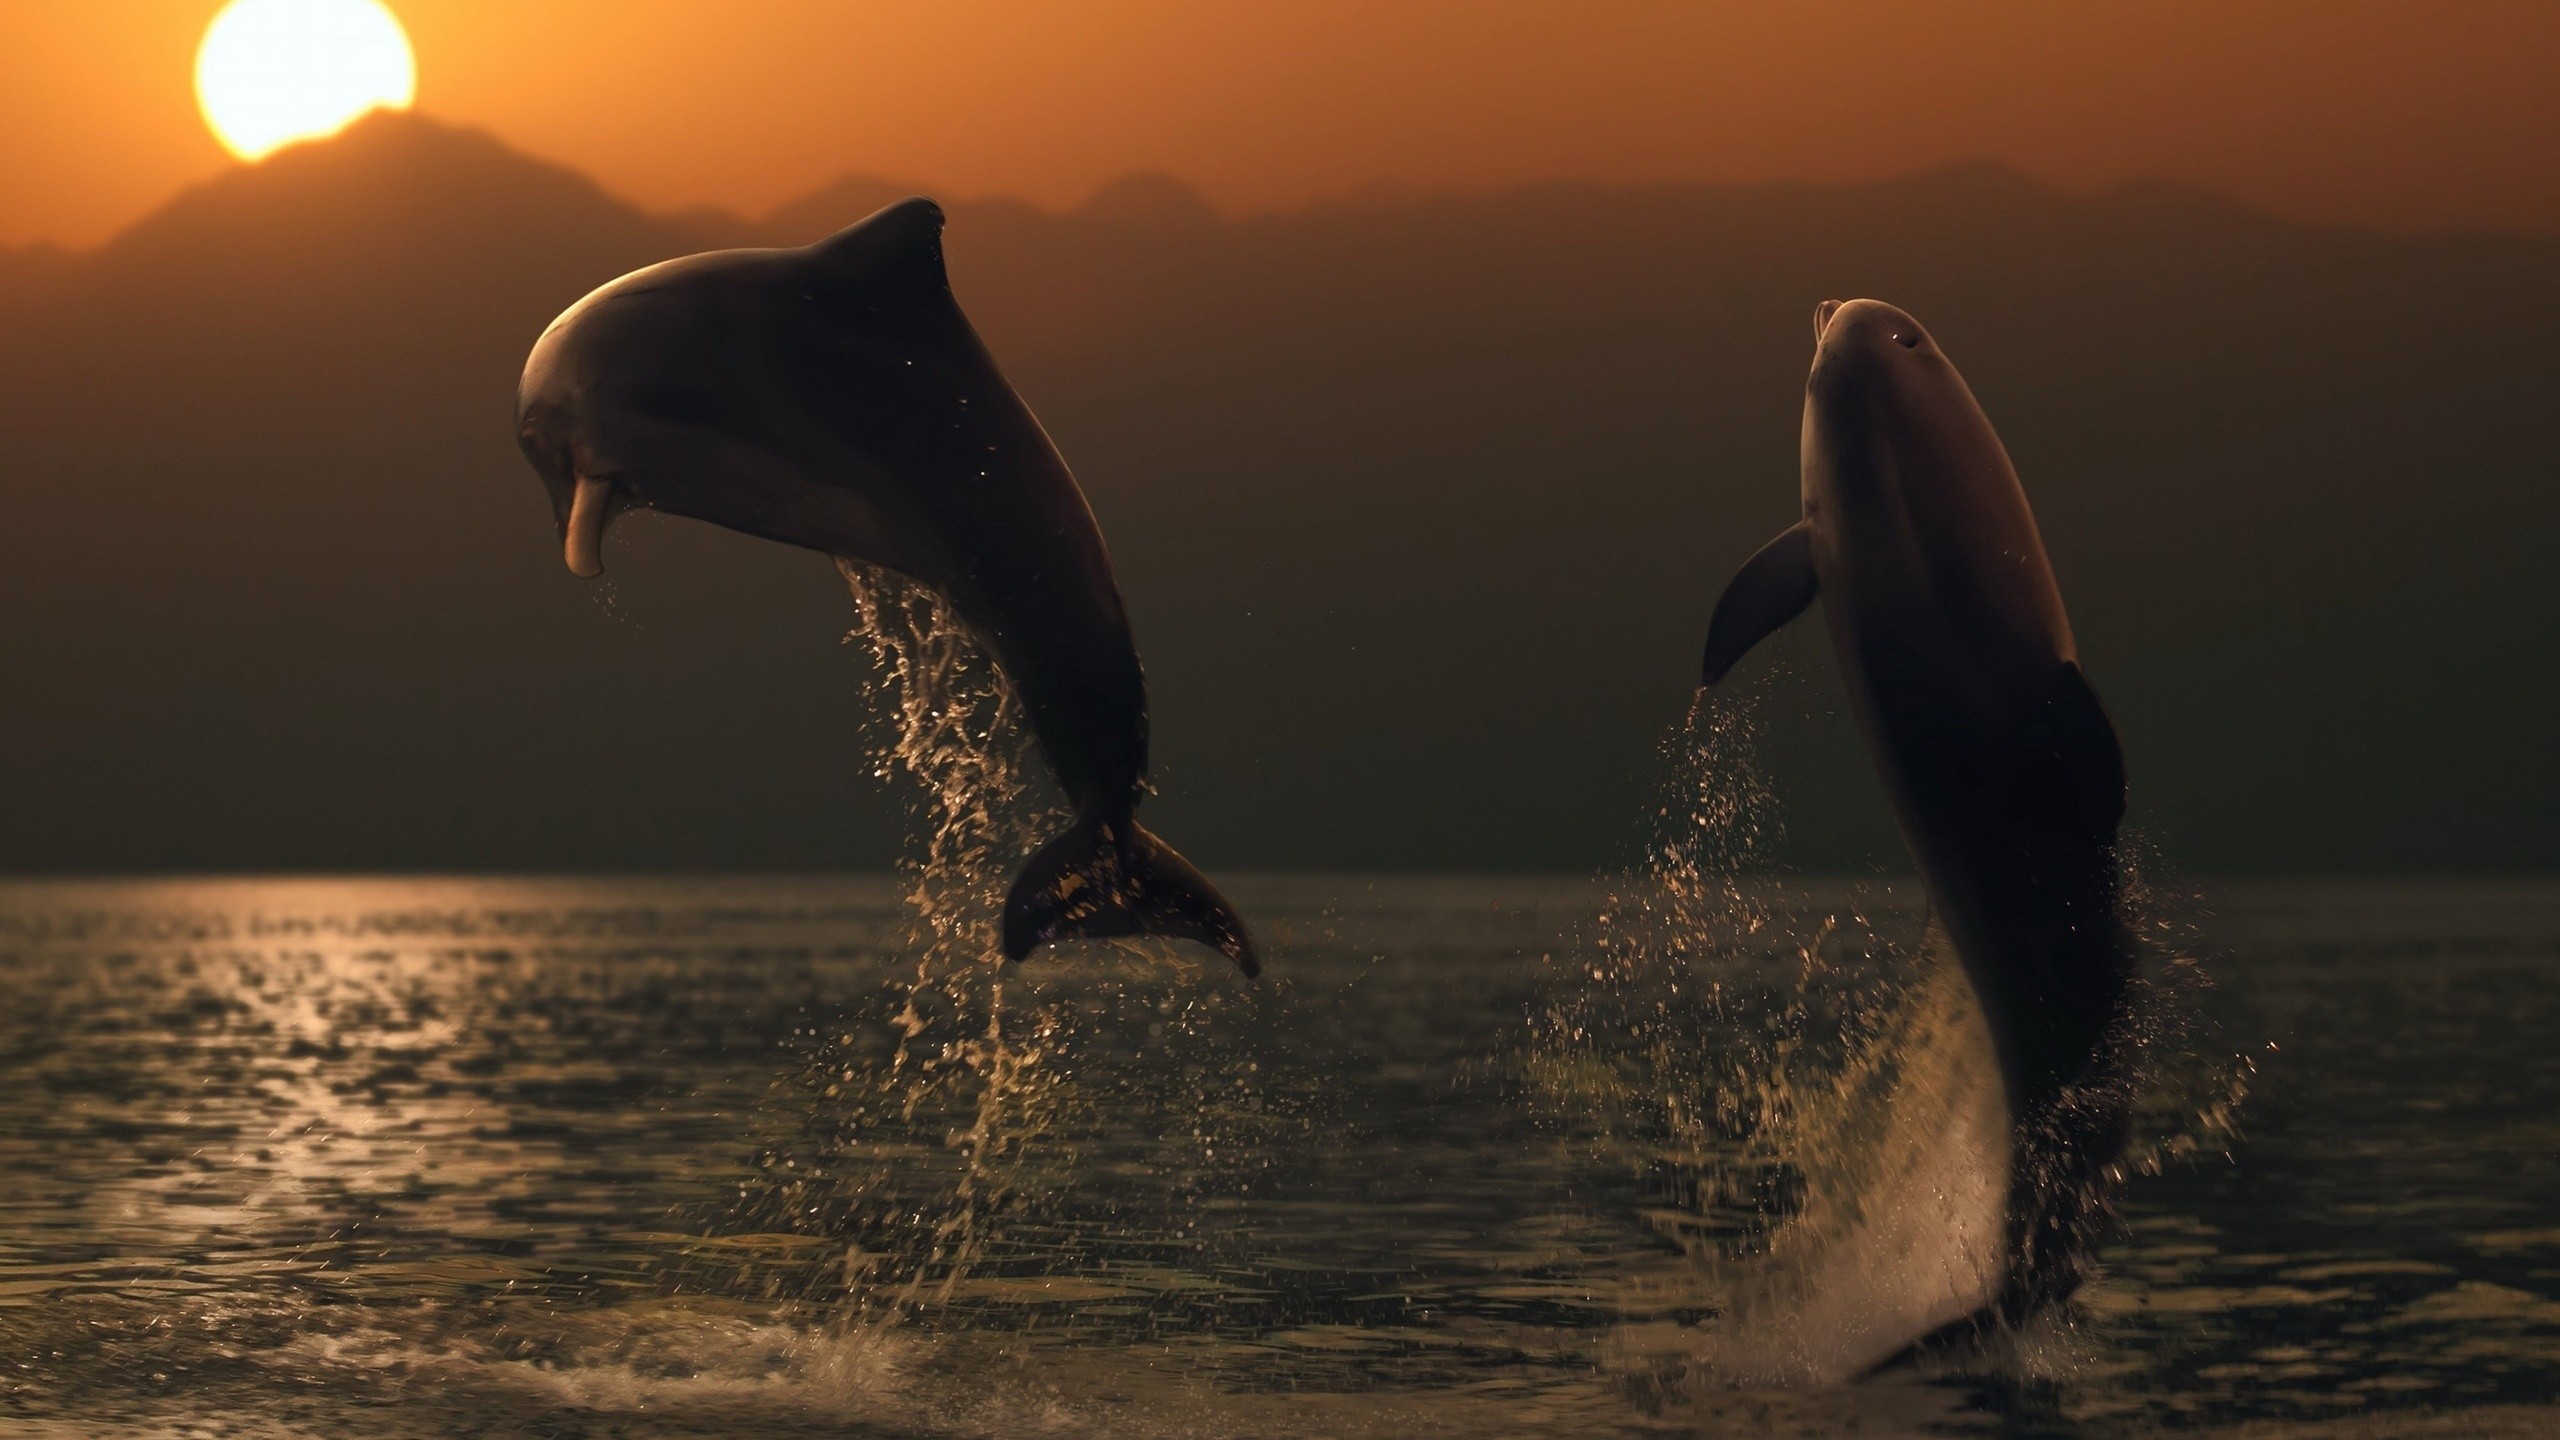 море океан дельфины